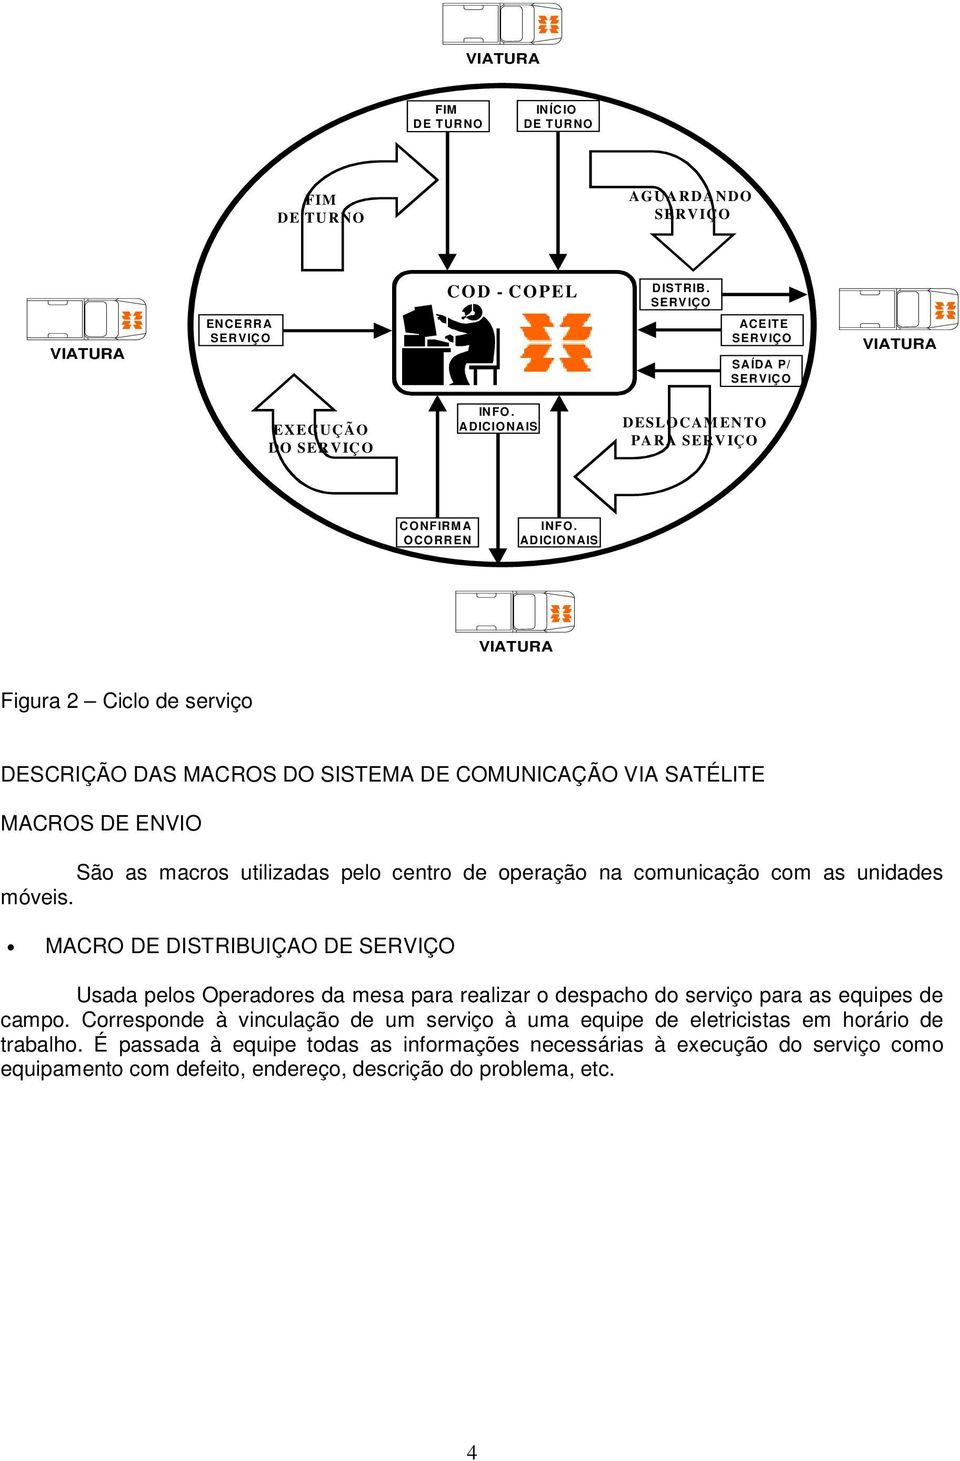 ADICIONAIS VIATURA Figura 2 Ciclo de serviço DESCRIÇÃO DAS MACROS DO SISTEMA DE COMUNICAÇÃO VIA SATÉLITE MACROS DE ENVIO São as macros utilizadas pelo centro de operação na comunicação com as